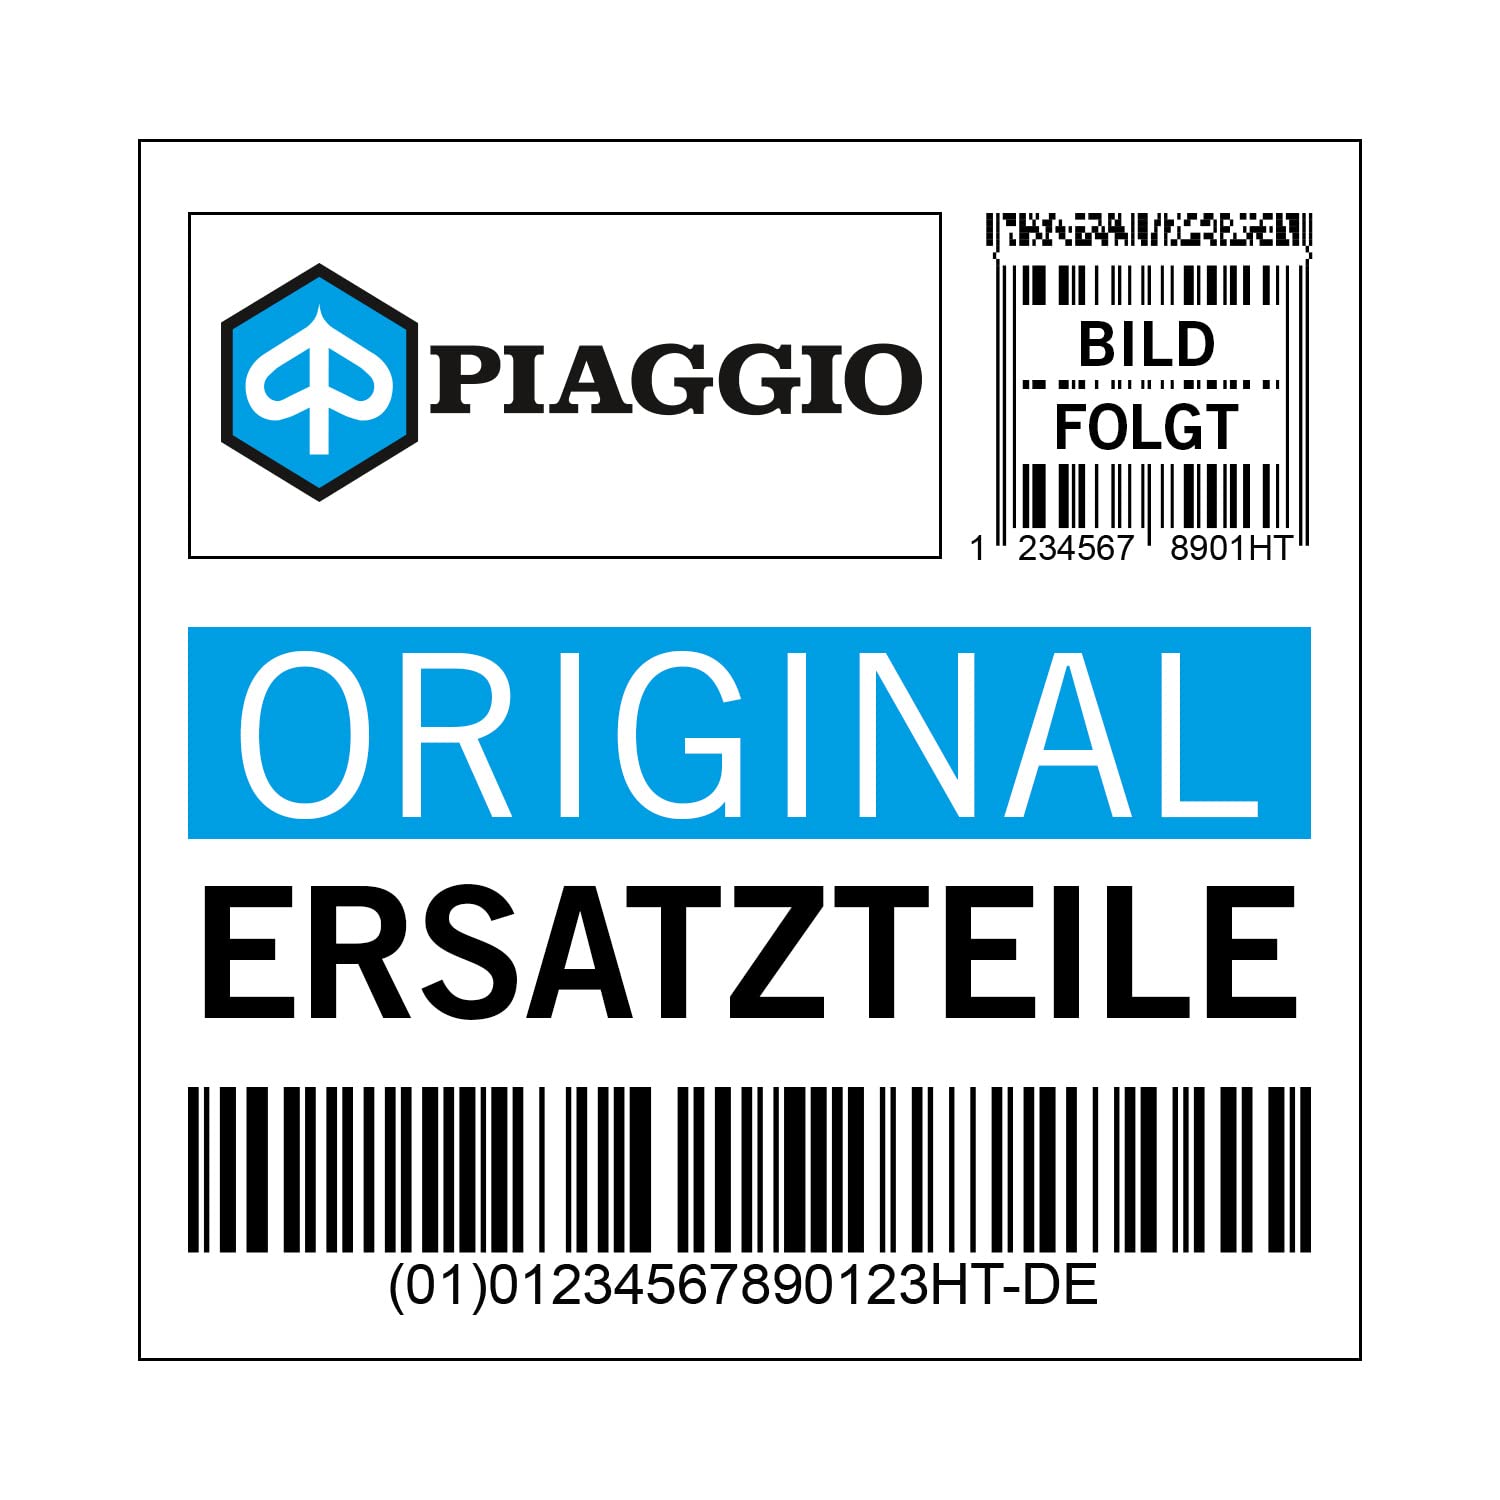 Deckel Piaggio Anschluss Spoiler, links, braun, ML 139/A braun matt, 1B001011000ML von Maxtuned